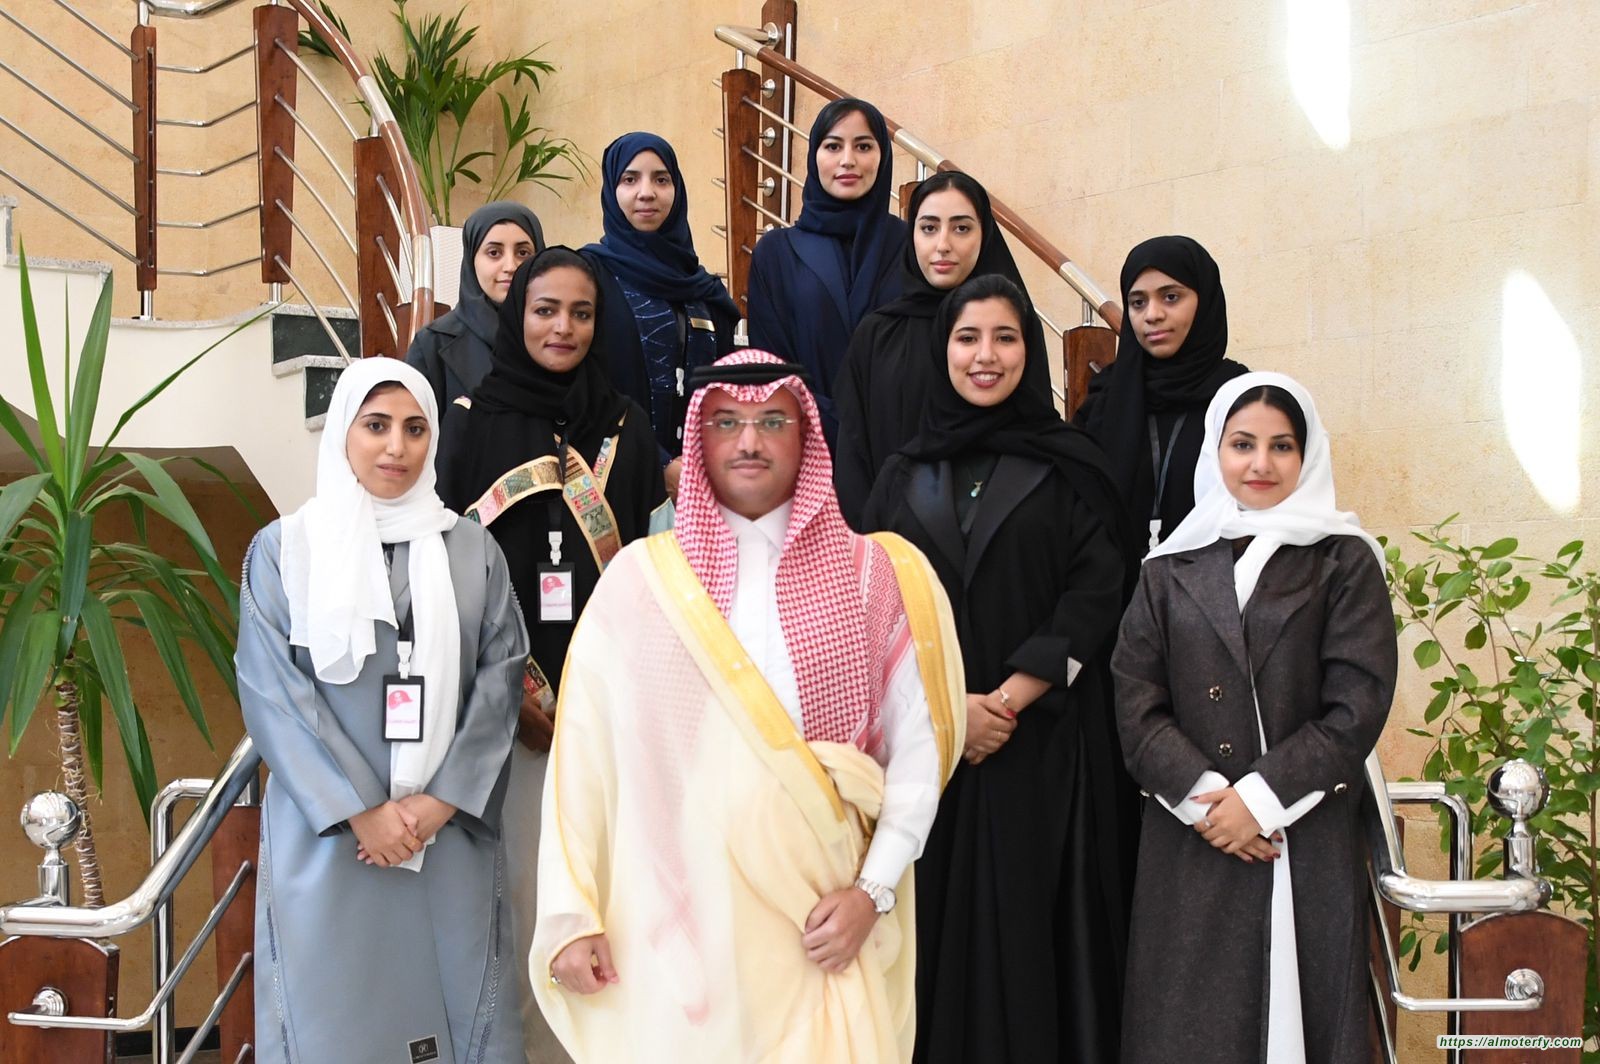 أول جمعية من نوعها بالمملكة إطلاق تأسيس جمعية مهندسات سعوديات